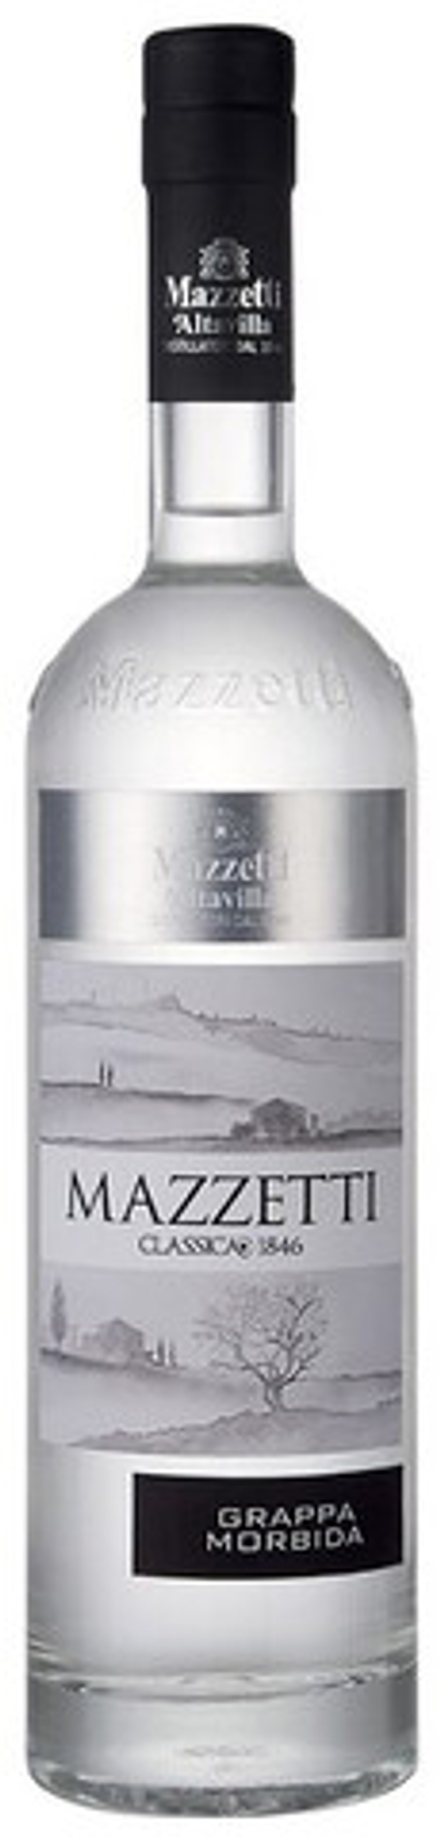 Граппа Mazzetti Classica 1846 Morbida, 0.5 л